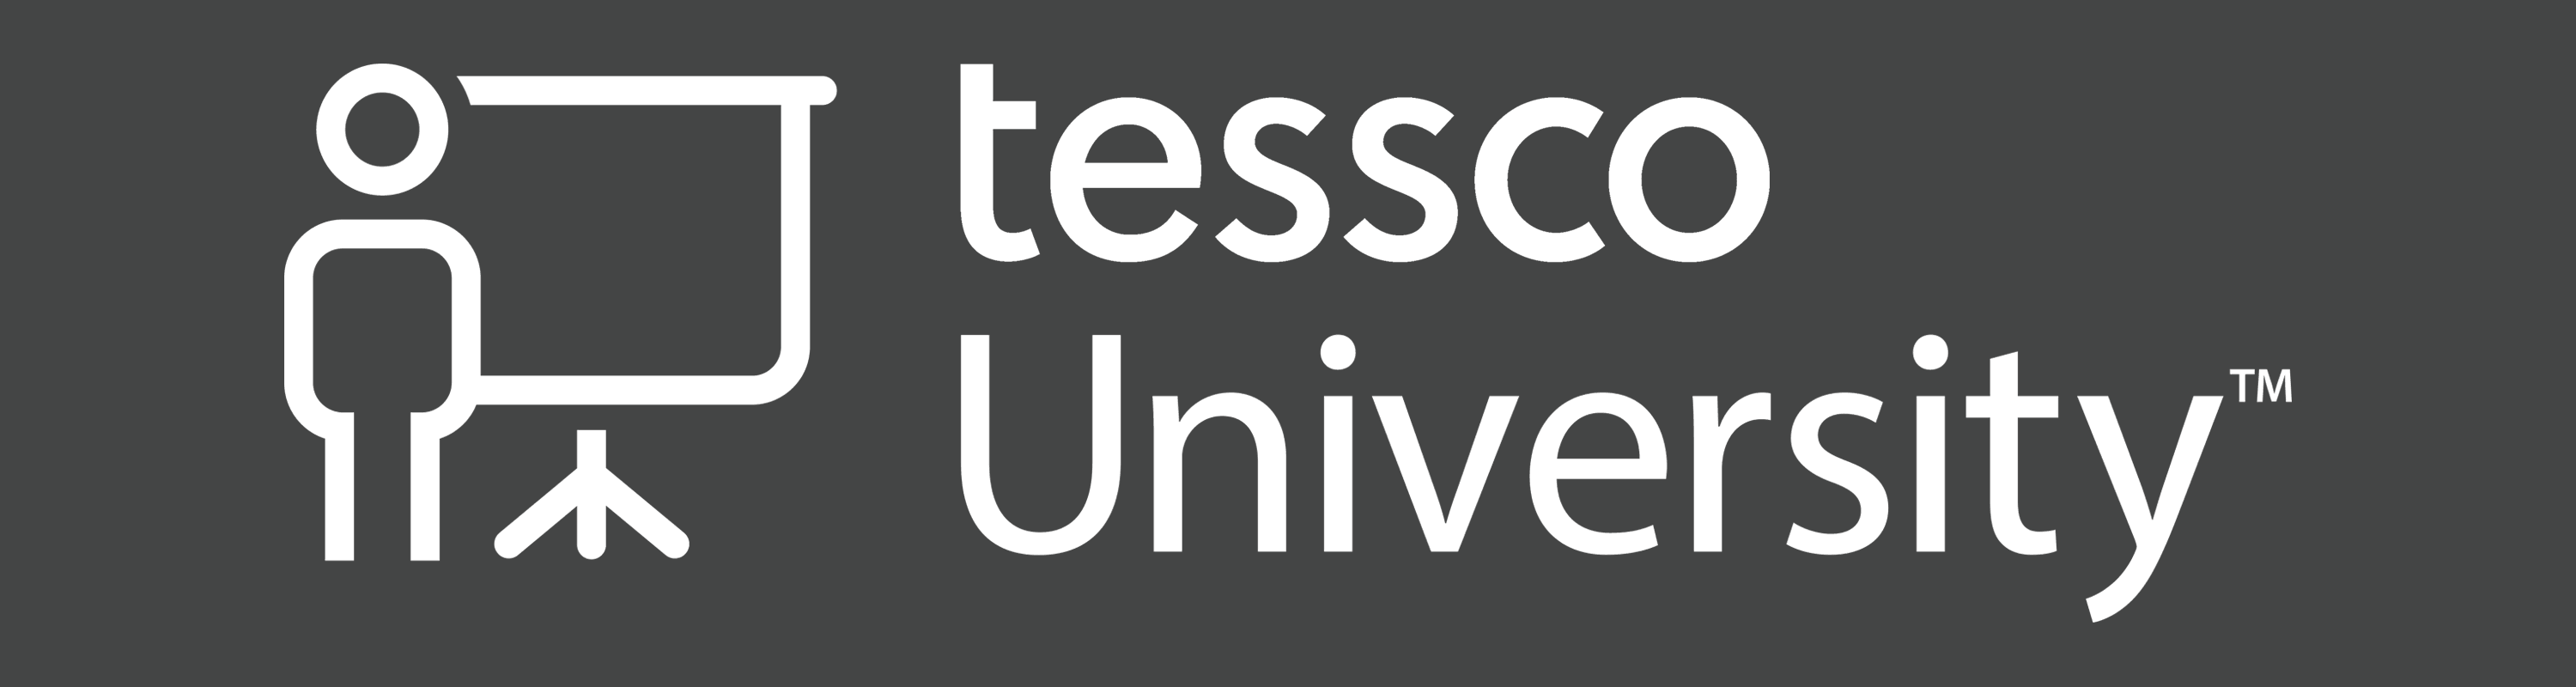 tesscoUniversity_banner